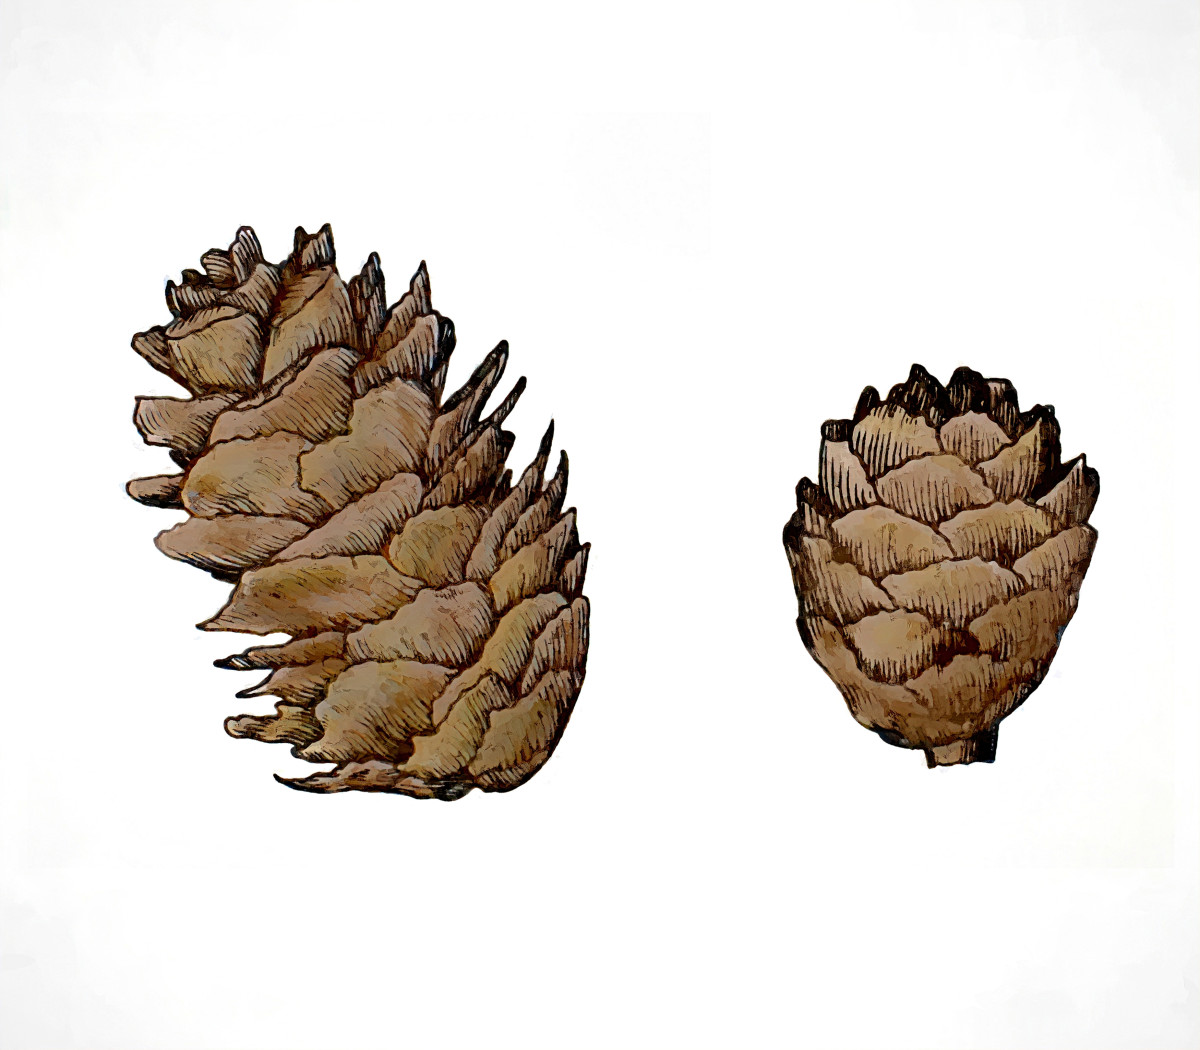 Black Spruce cones